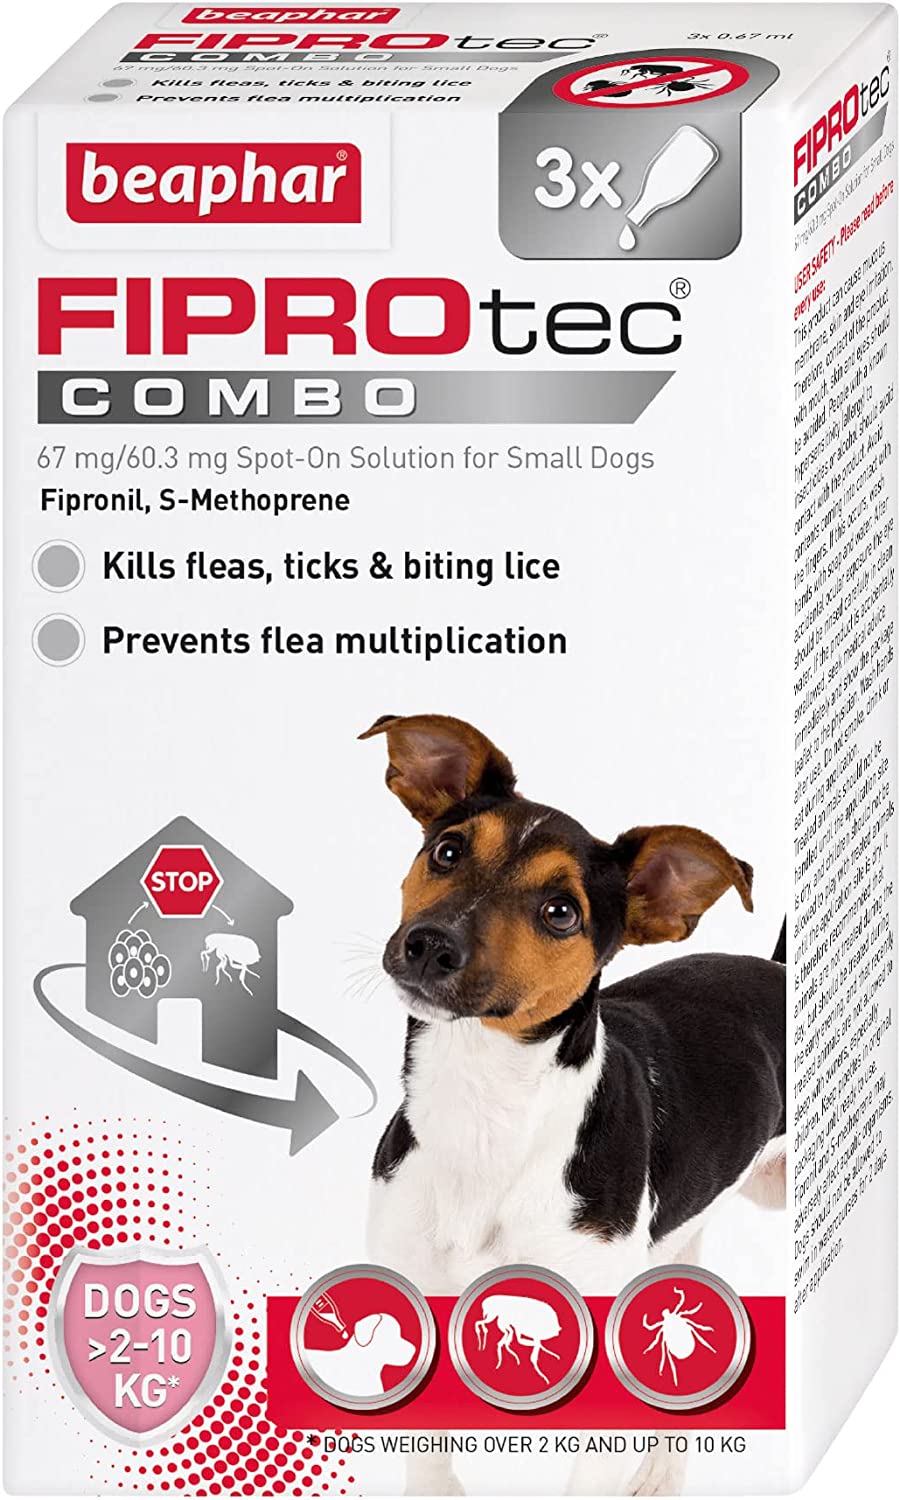 Beaphar Fiprotec Combo Flea & Tick Spot On For Small Dogs (2-10kg) 3 pack